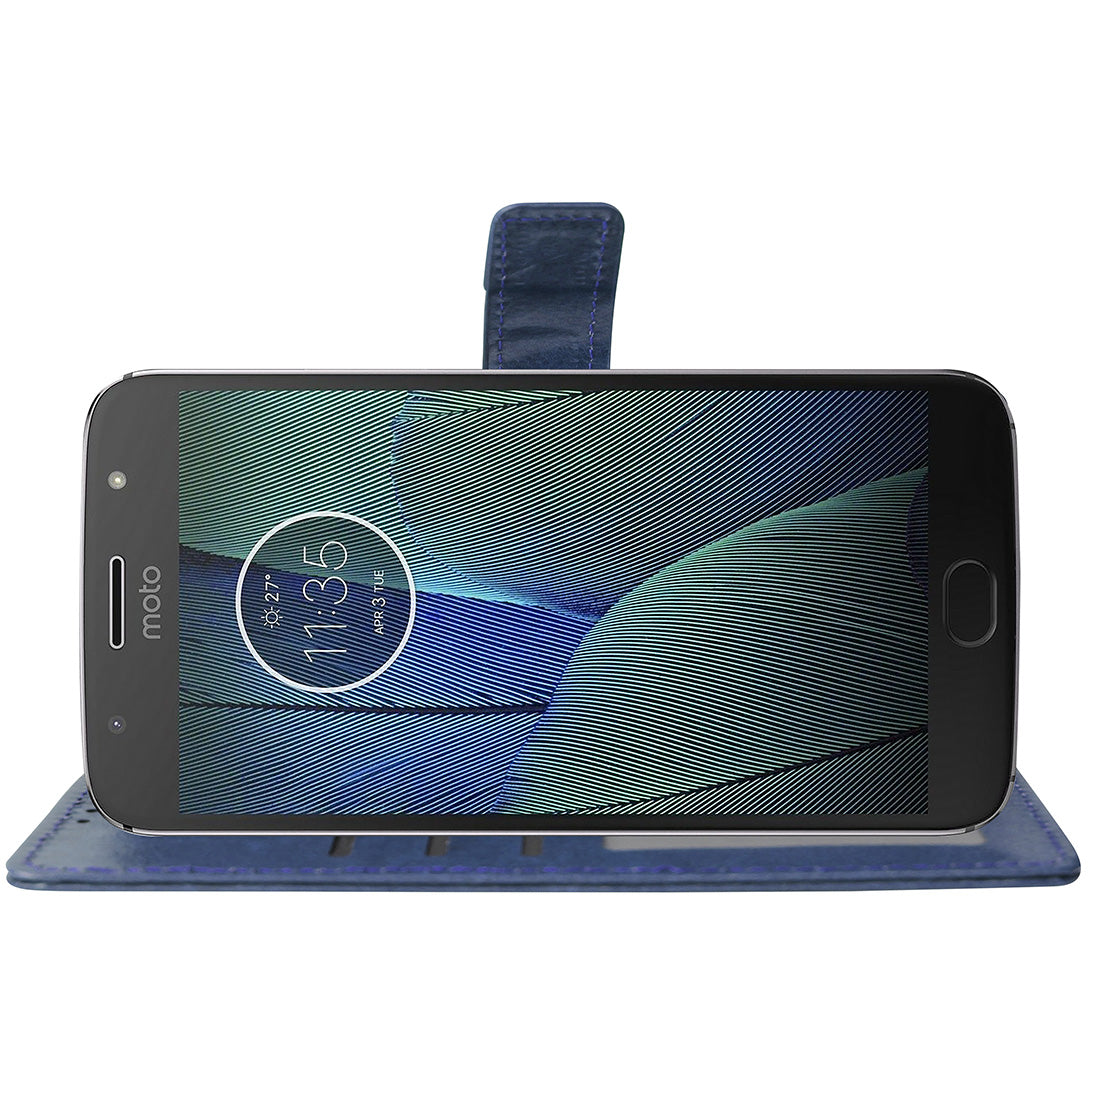 Premium Wallet Flip Cover for Motorola Moto G5S Plus